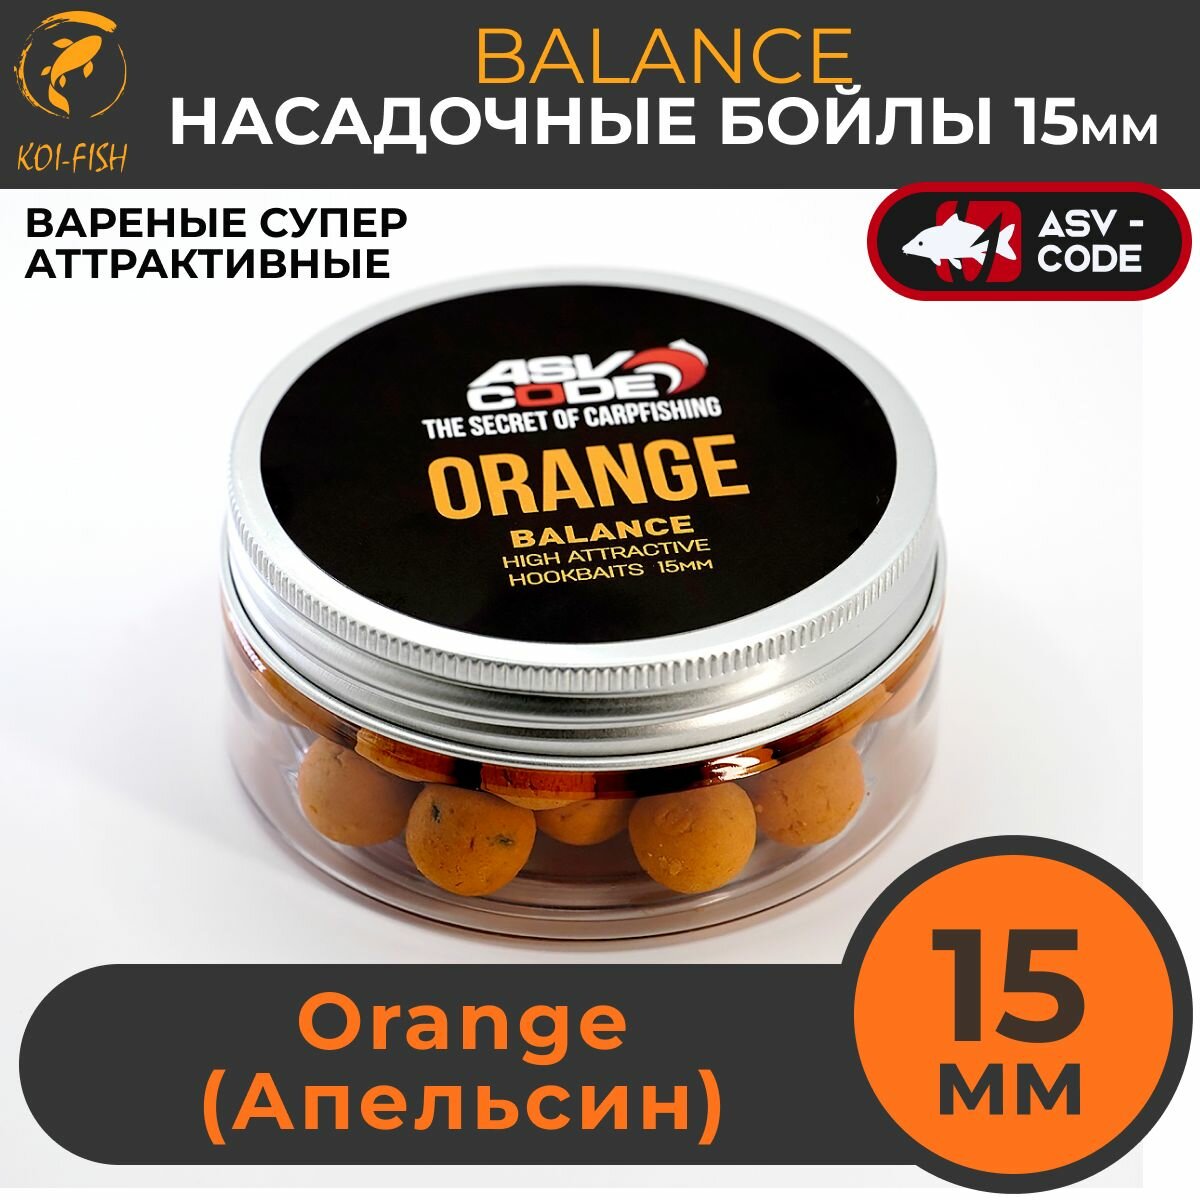 Насадочные бойлы 15мм Balance ASV-CODE Orange (Апельсин) , супер аттрактивные, насадочные, вареные, баланс